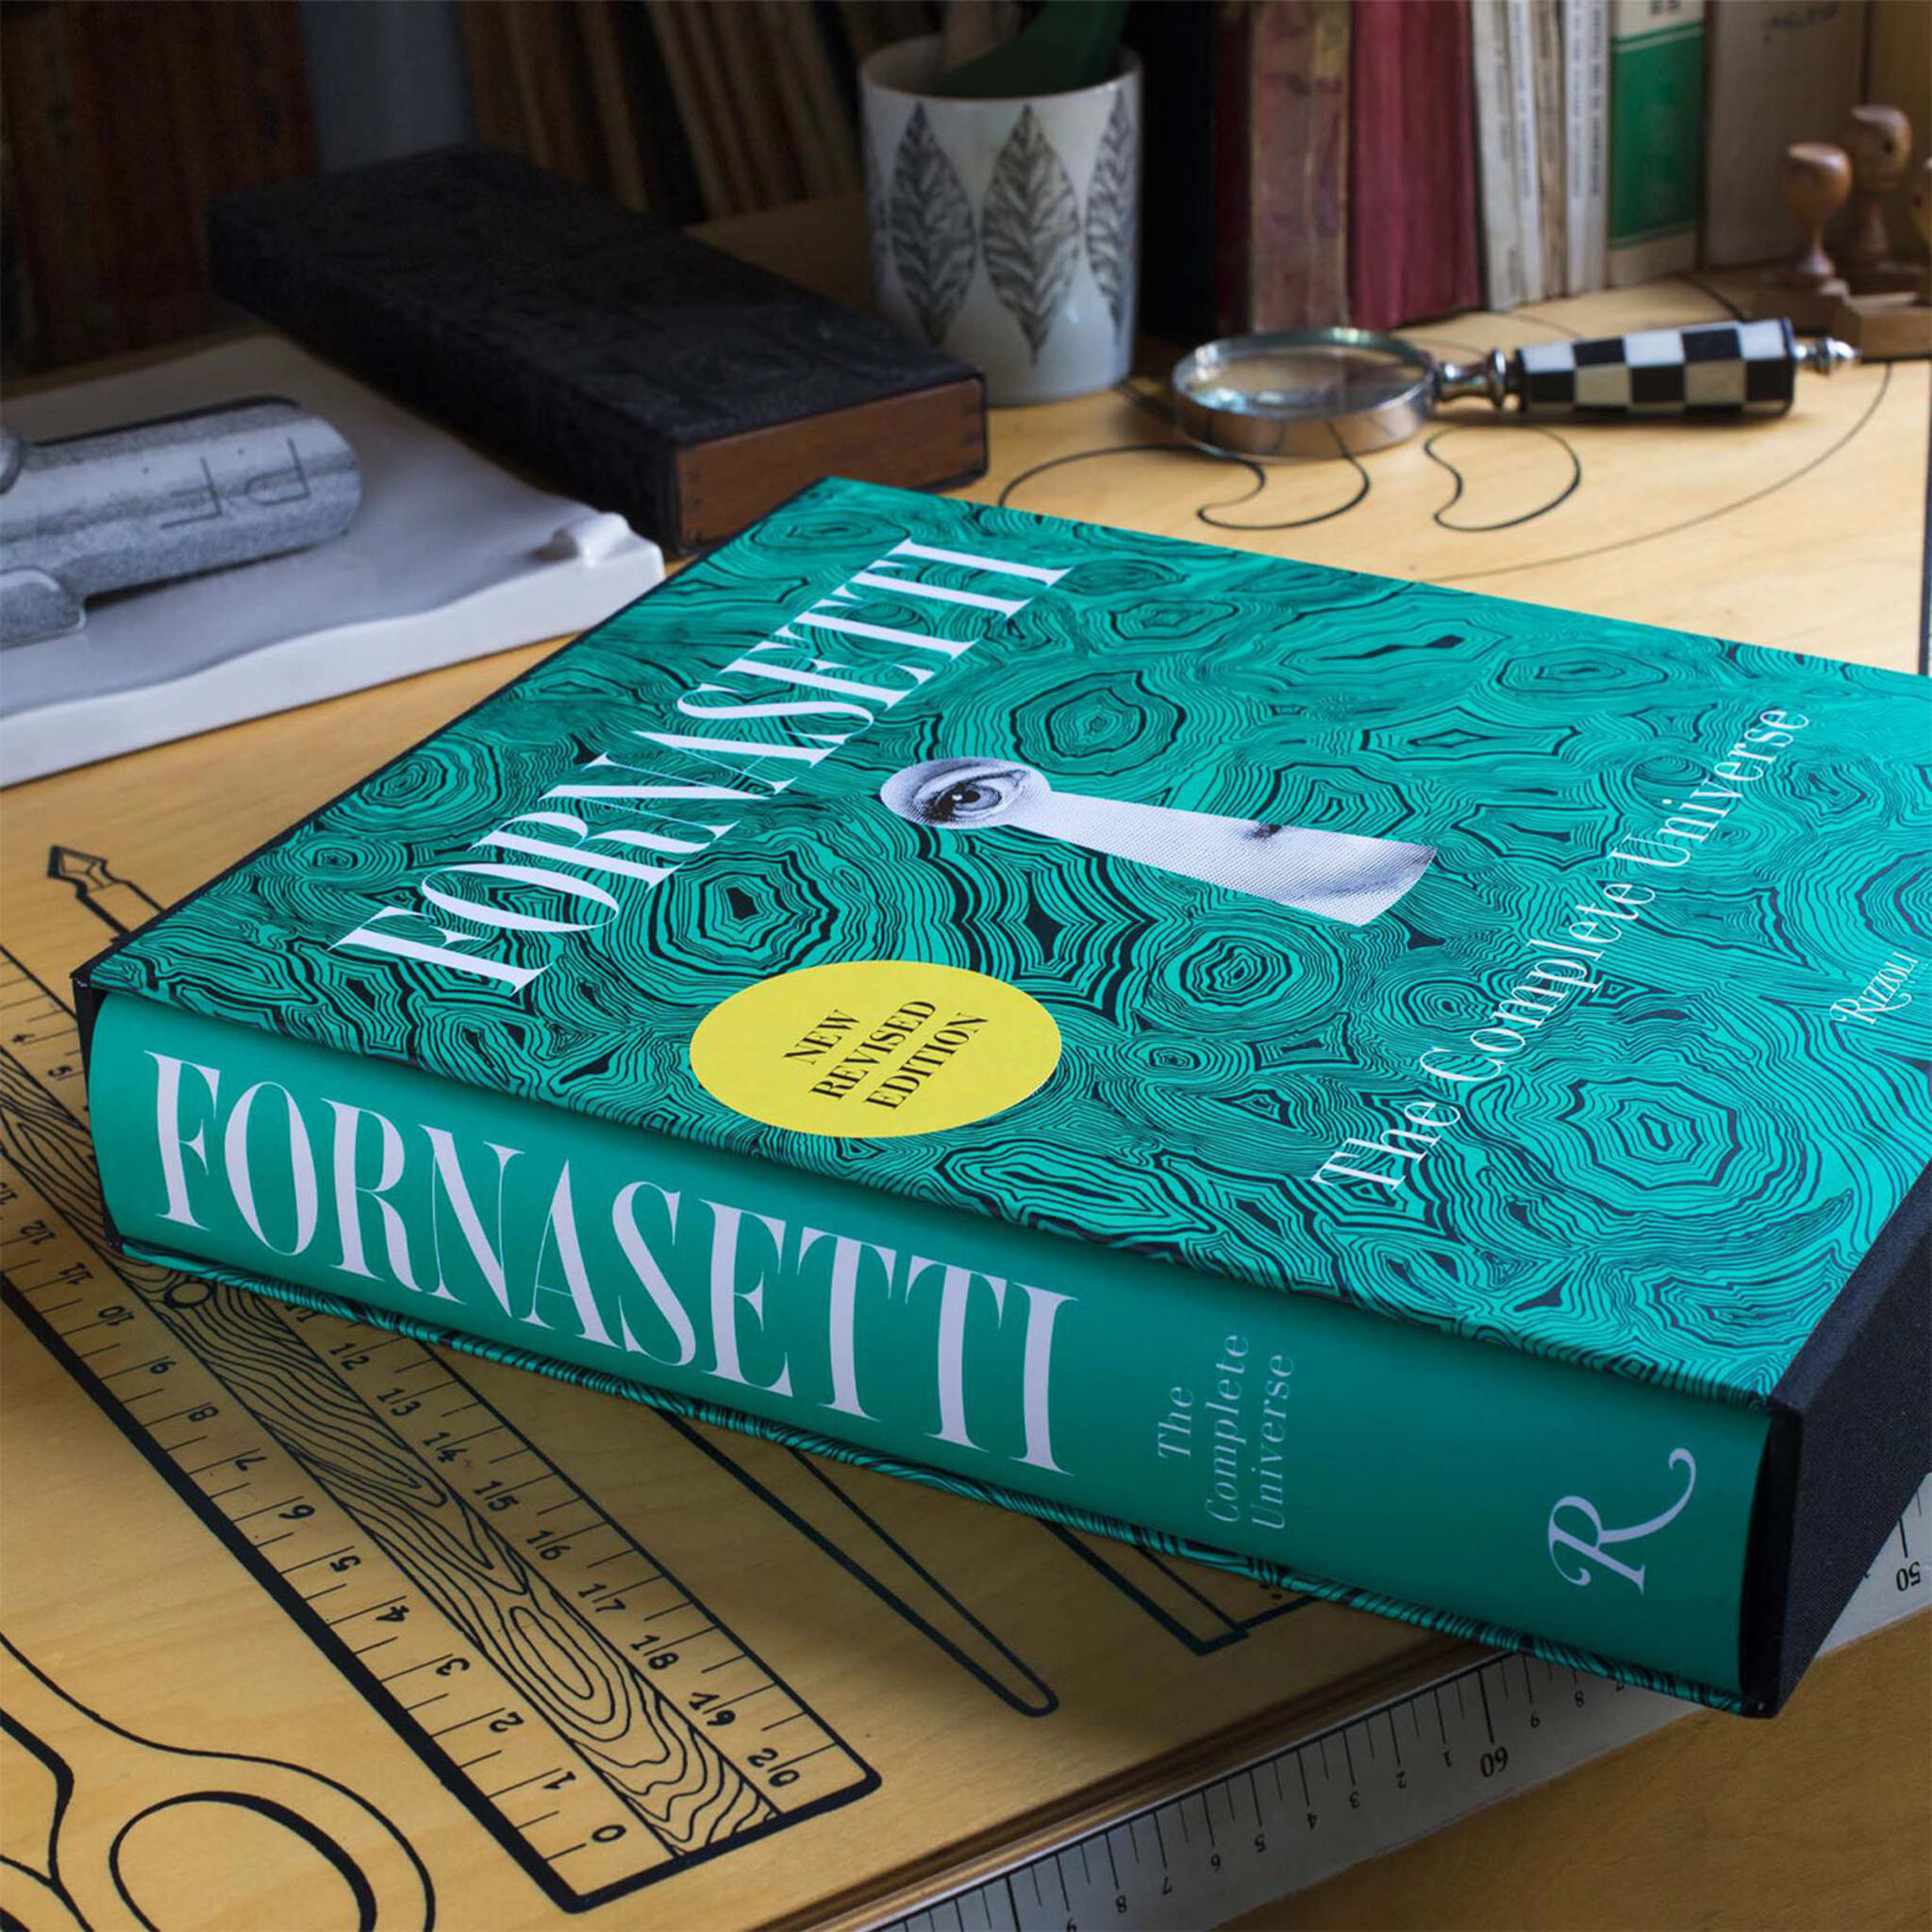 Fornasetti - The Complete Universe Book - Alternative view 1